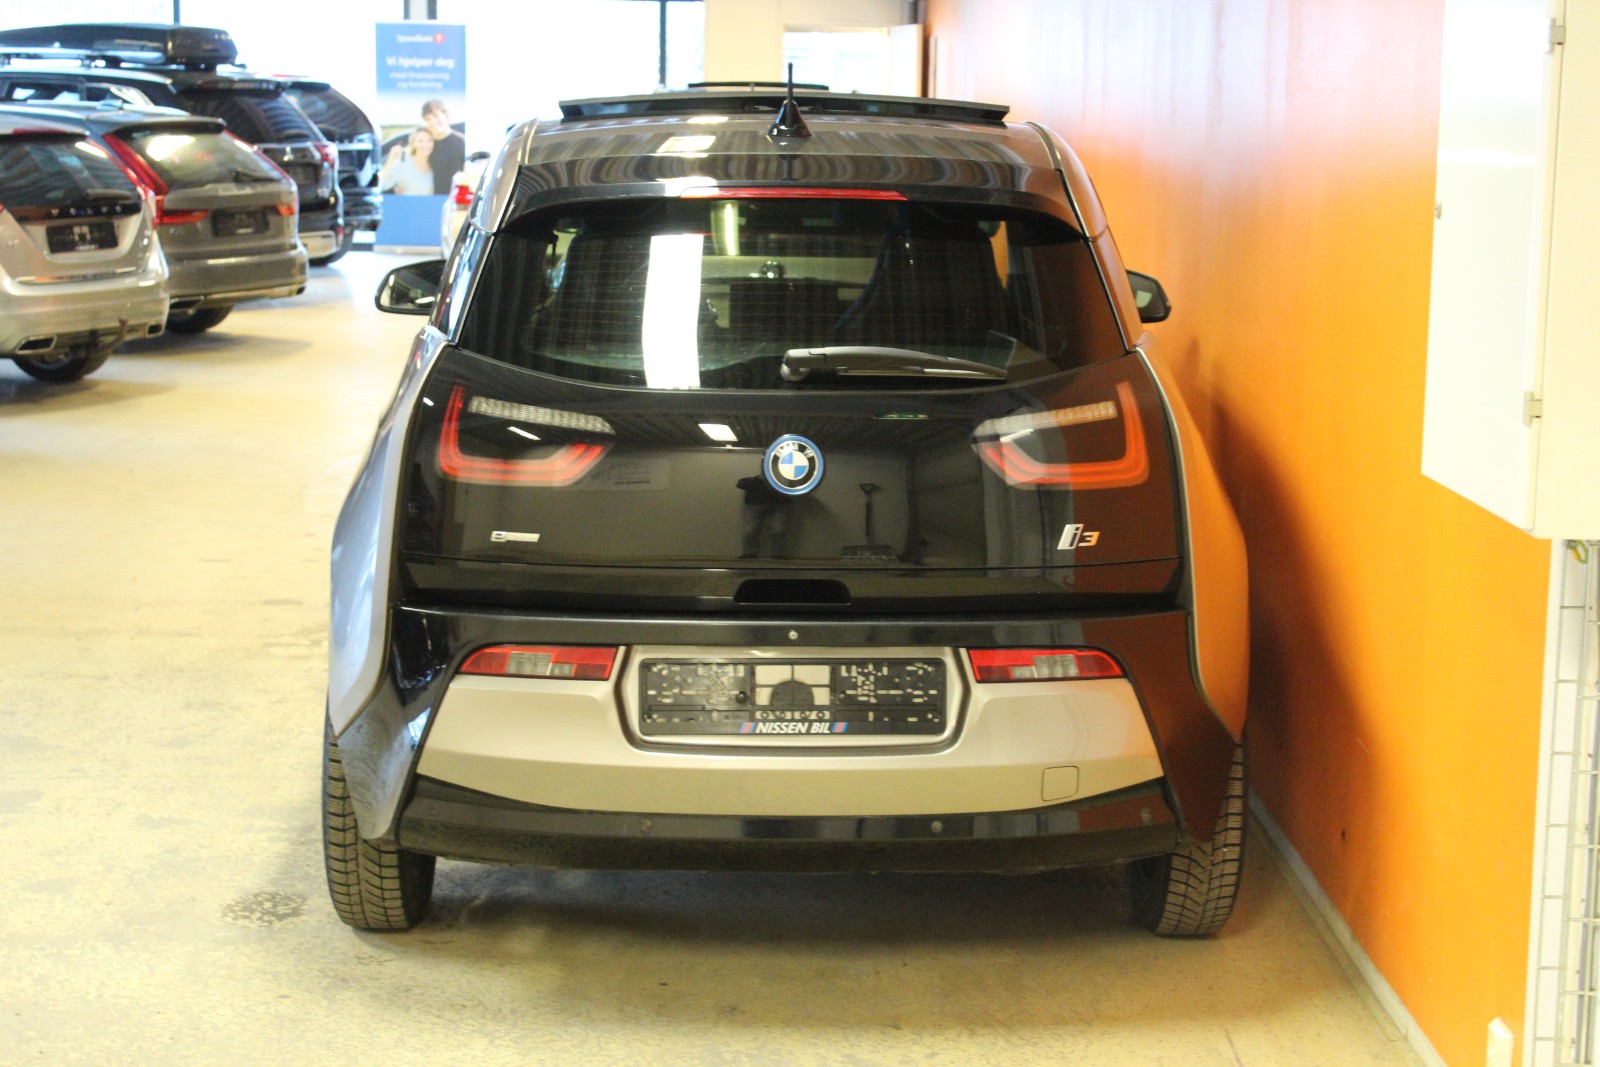 Bilde 5 av BMW i3 2014